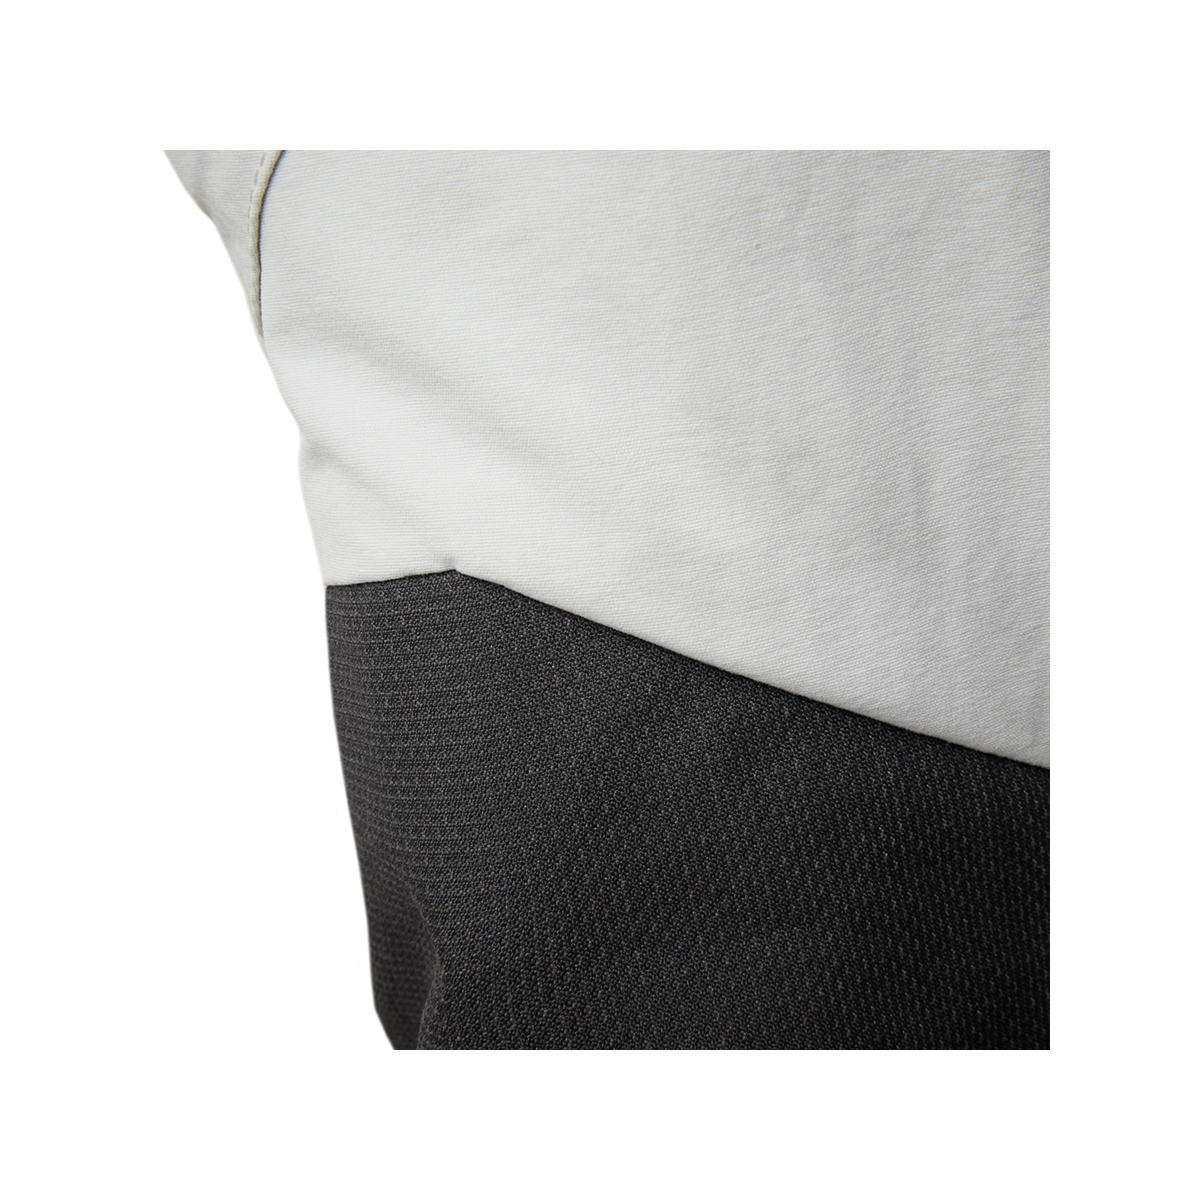 Musto Evolution Performance pantalon de voile 2.0 homme gris clair, taille 34